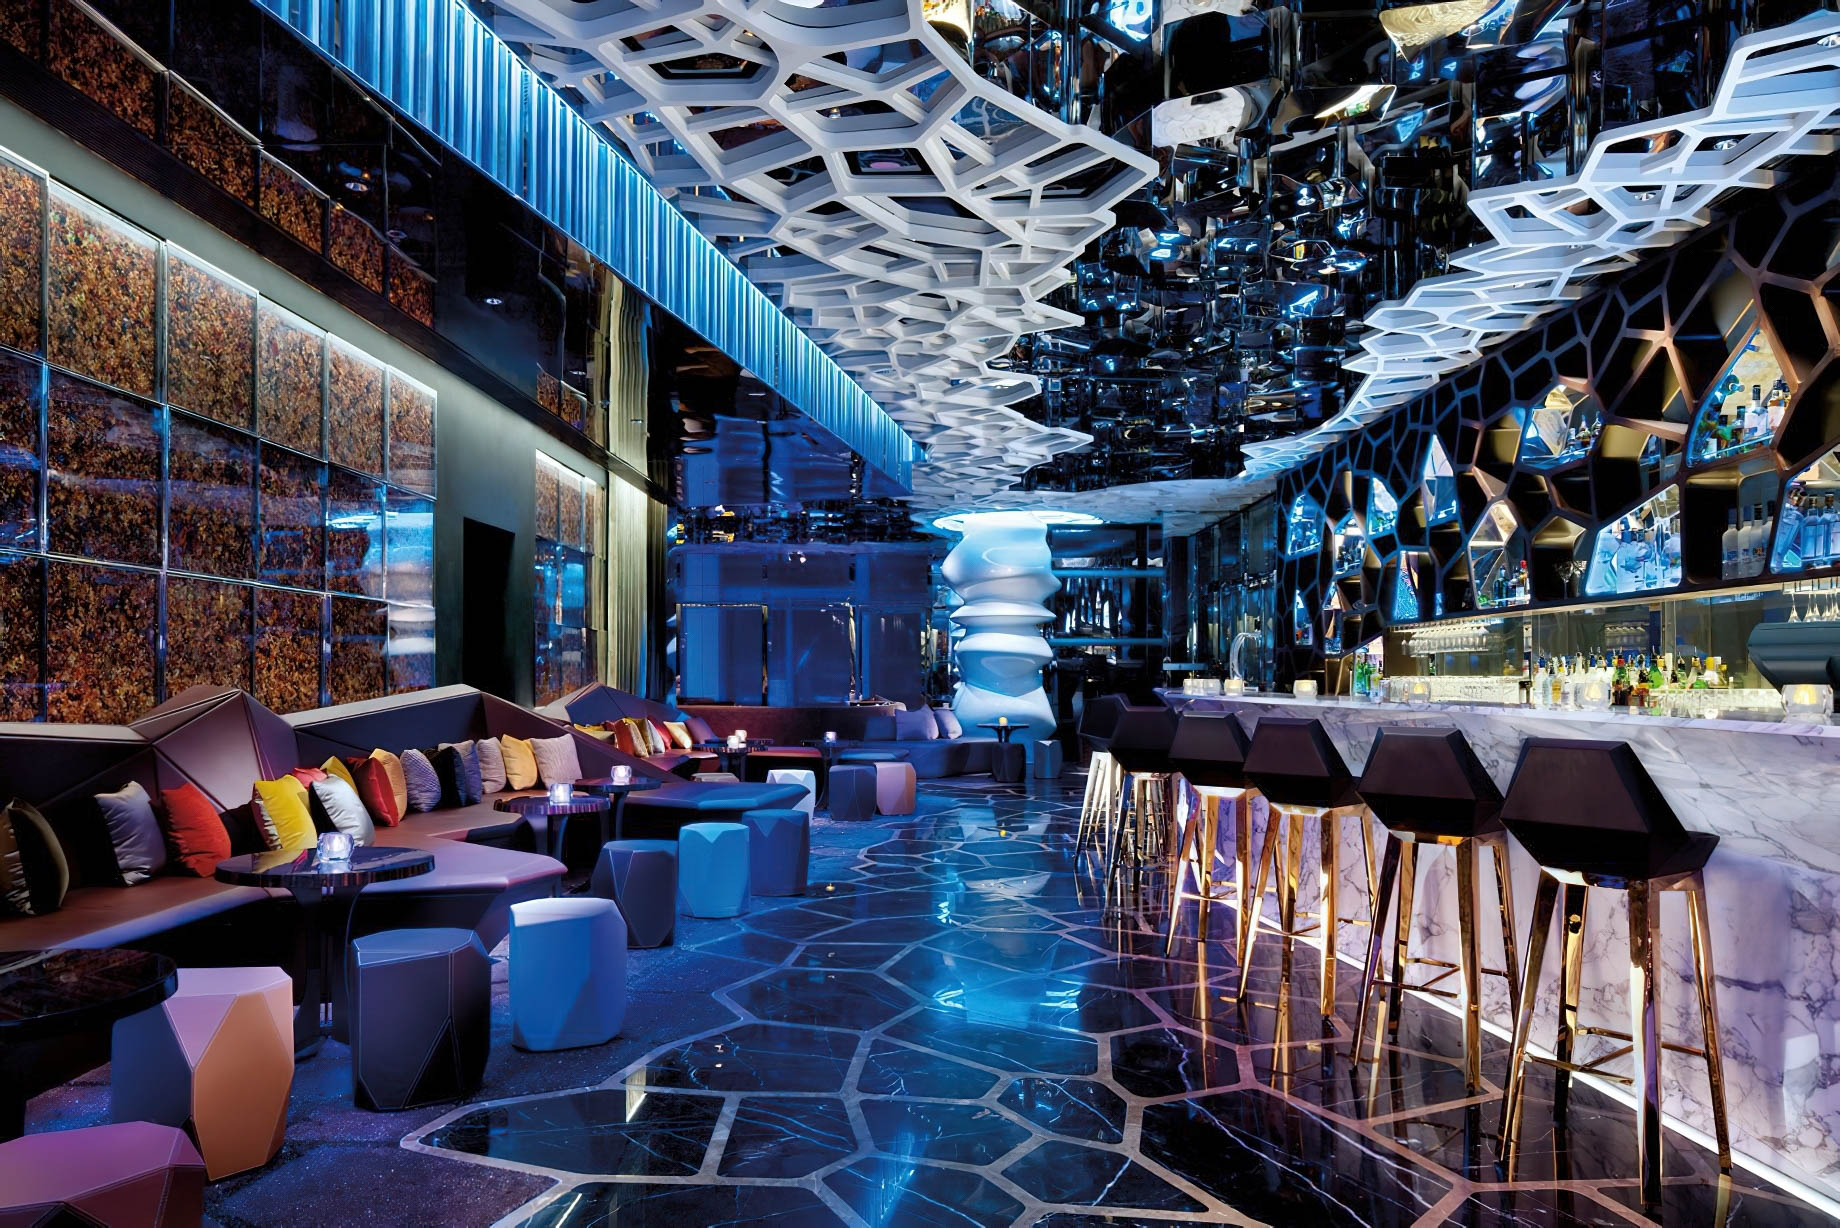 The Ritz-Carlton, Hong Kong Hotel – West Kowloon, Hong Kong – Ozone Bar